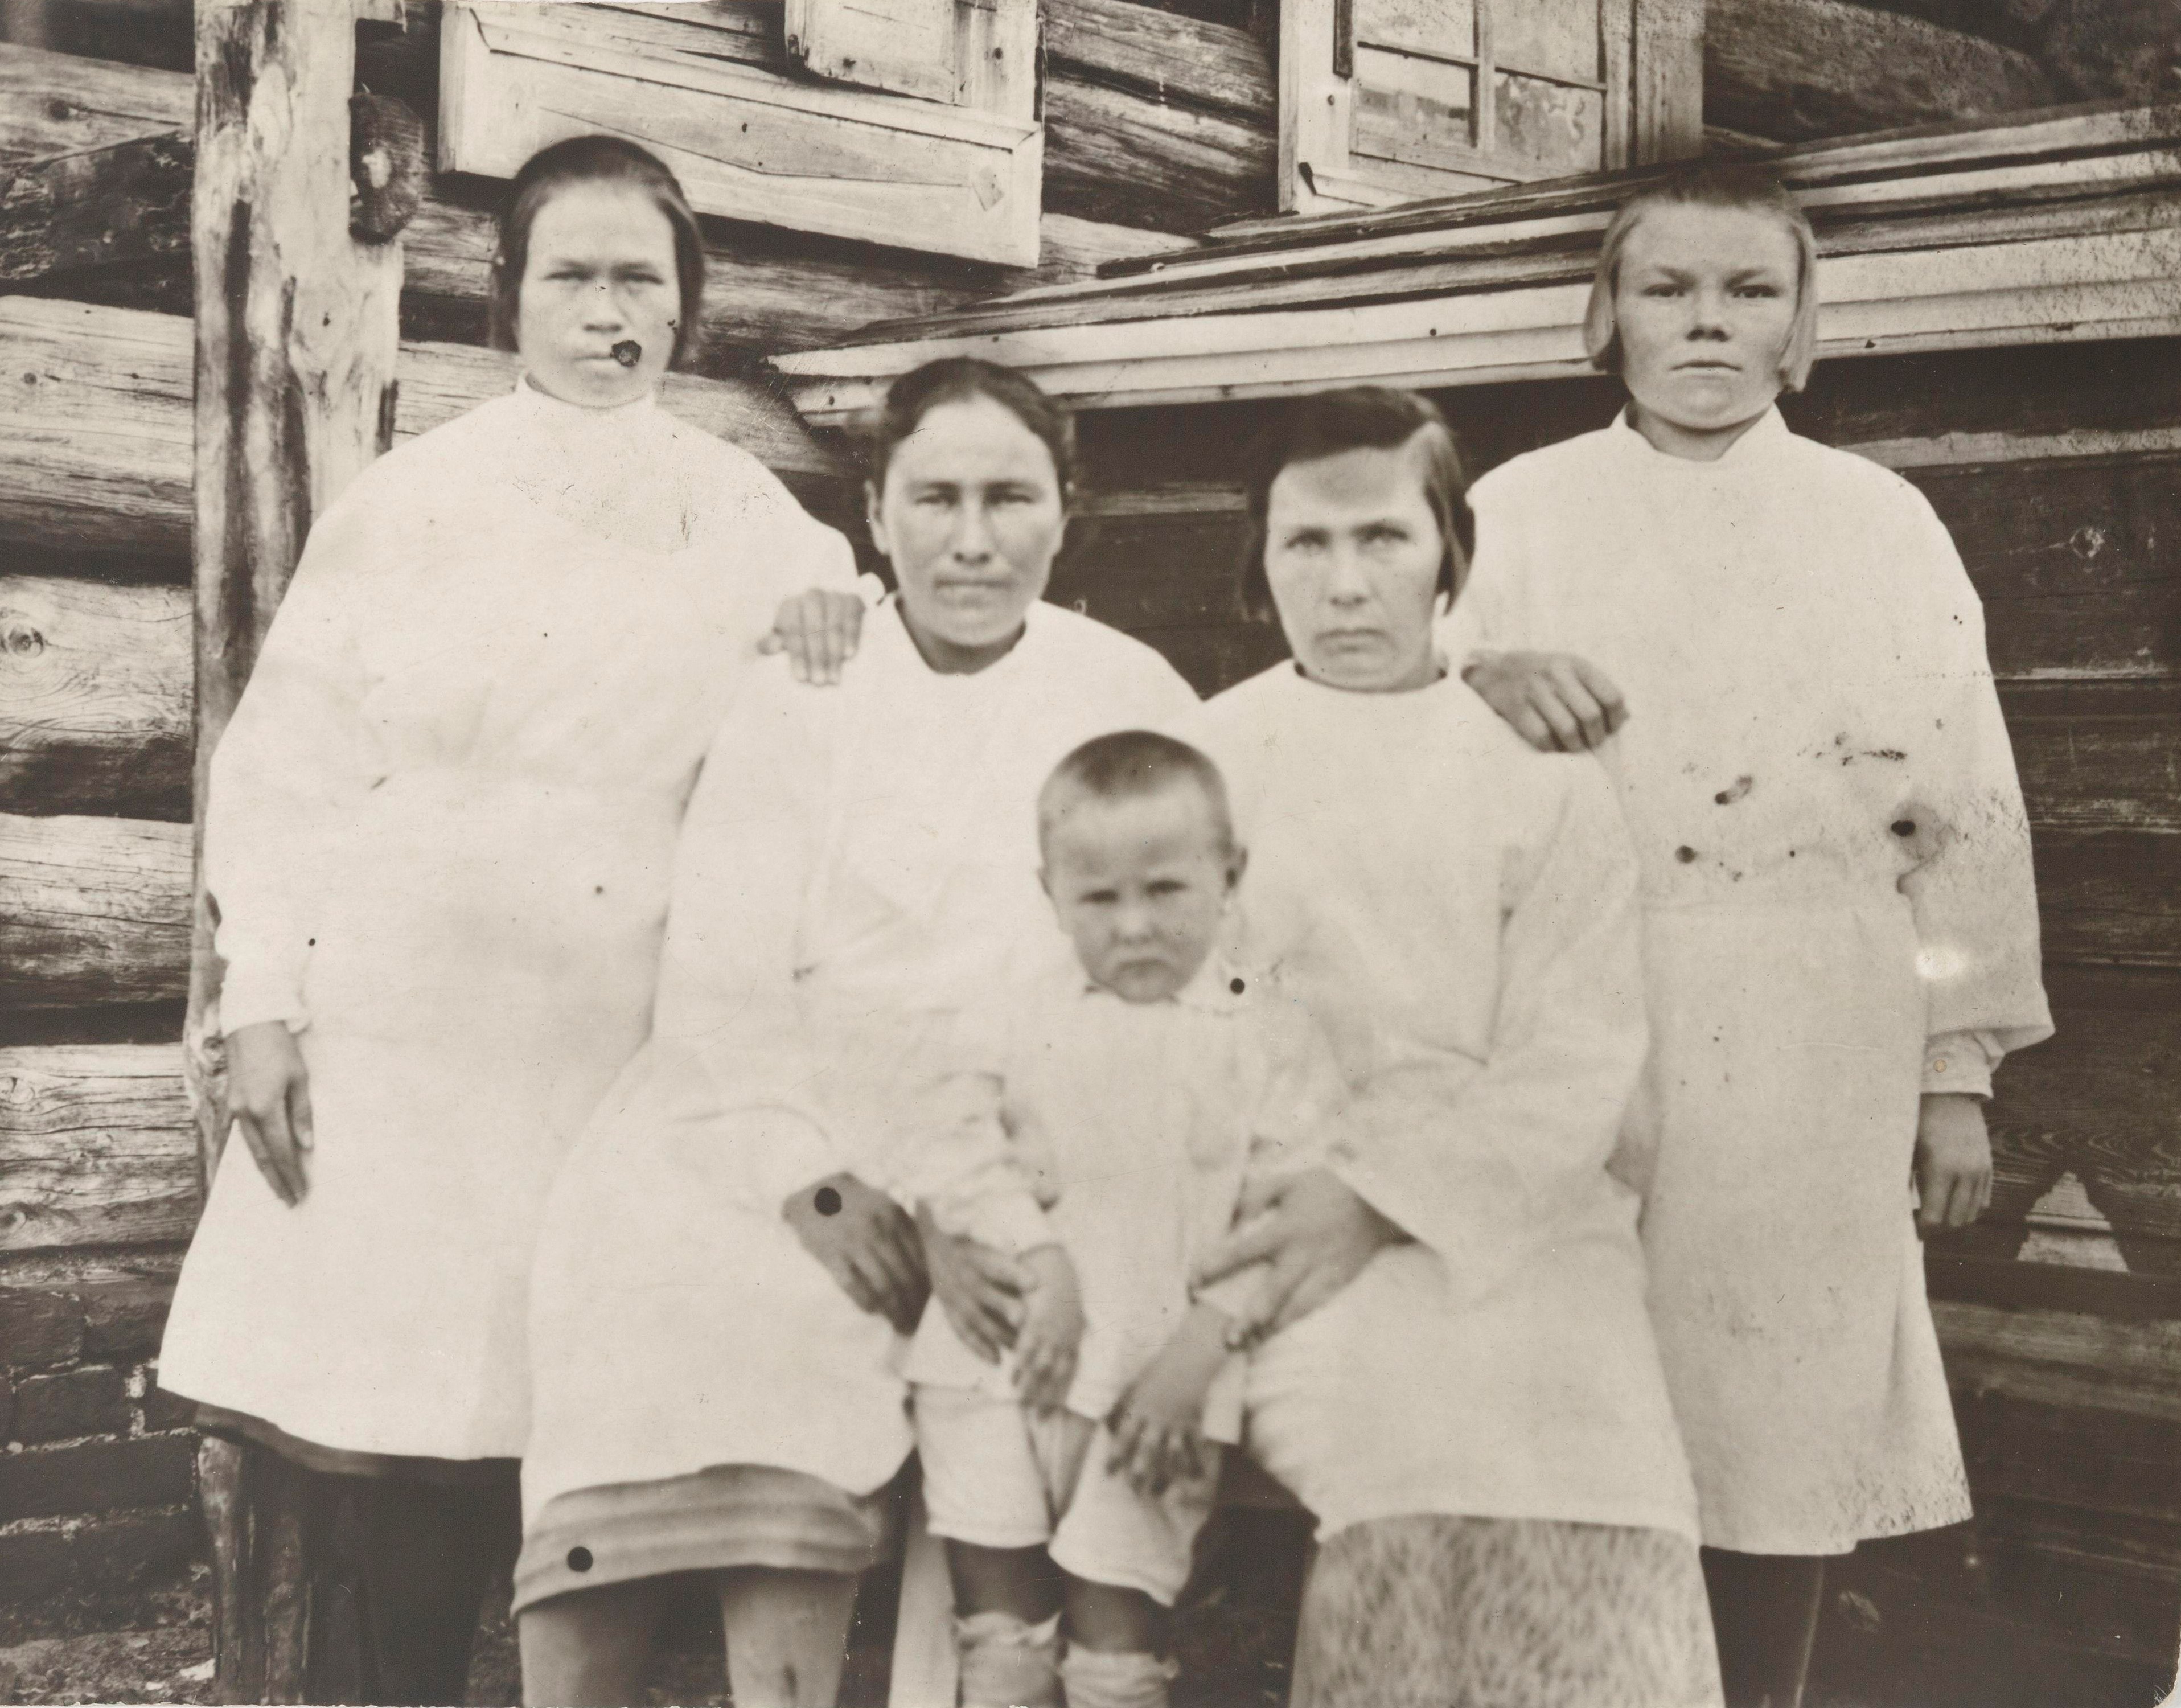 Uralilla sijaitsevan Peskin kylän sairaalan synnytysosaston työntekijöitä, toinen oikealta suomalainen Hilja Kupolova. Kuvassa keskellä mahdollisesti Hilja Kupolovan poika Juri Kupolov. Kuva on otettu 1930-luvulla. Humppilasta alun perin lähtöisin oleva Hilja Kupolova ja hänen venäläinen puolisonsa Juri Kupolov olivat muuttaneet Suomesta Venäjälle vuoden 1917 tienoilla. Heidät molemmat pidätettiin vuonna 1938. Hilja Kupolova vapautettiin, mutta Juri Kupolov teloitettiin. Miehensä pidätyksen jälkeen Hilja jäi yksin lasten kanssa. SKS KRA, Hilja Kupolovan arkisto. CC BY-NC-ND 4.0